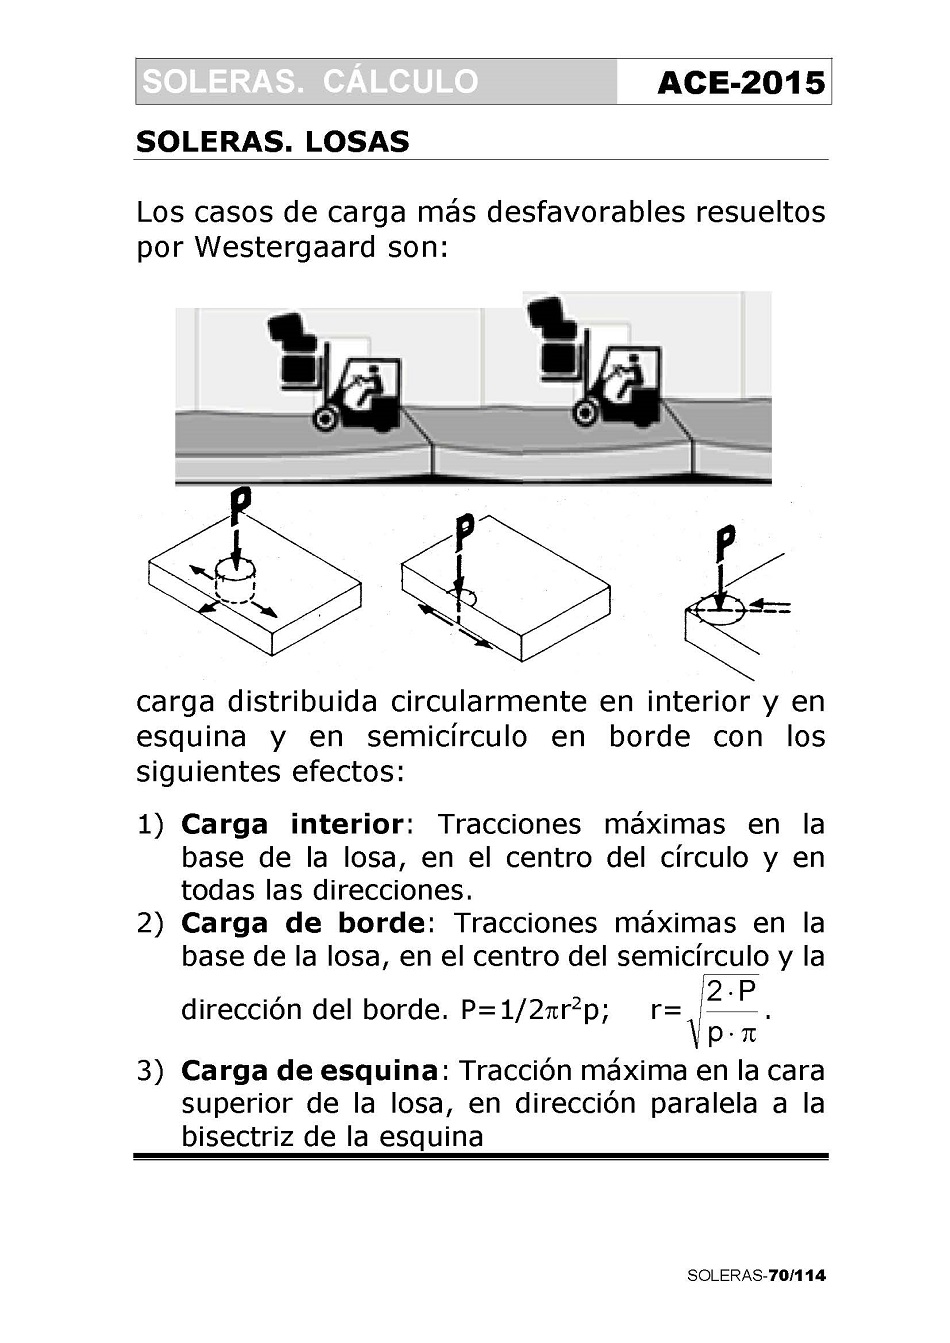 Cálculo de Soleras de Hormigón. Página 70